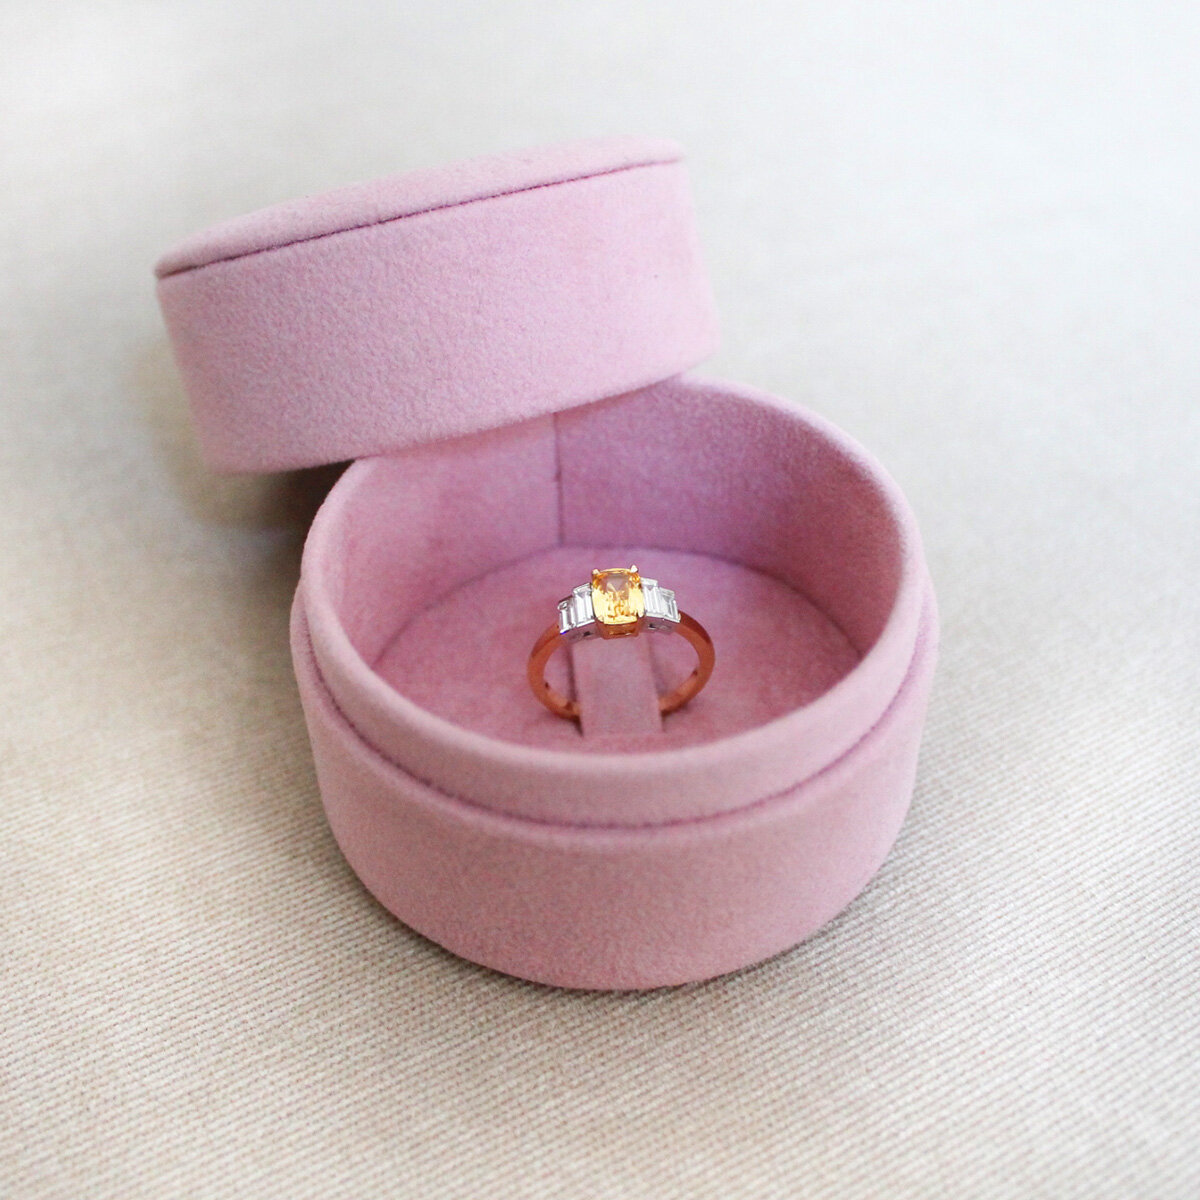 Sirius engagement ring